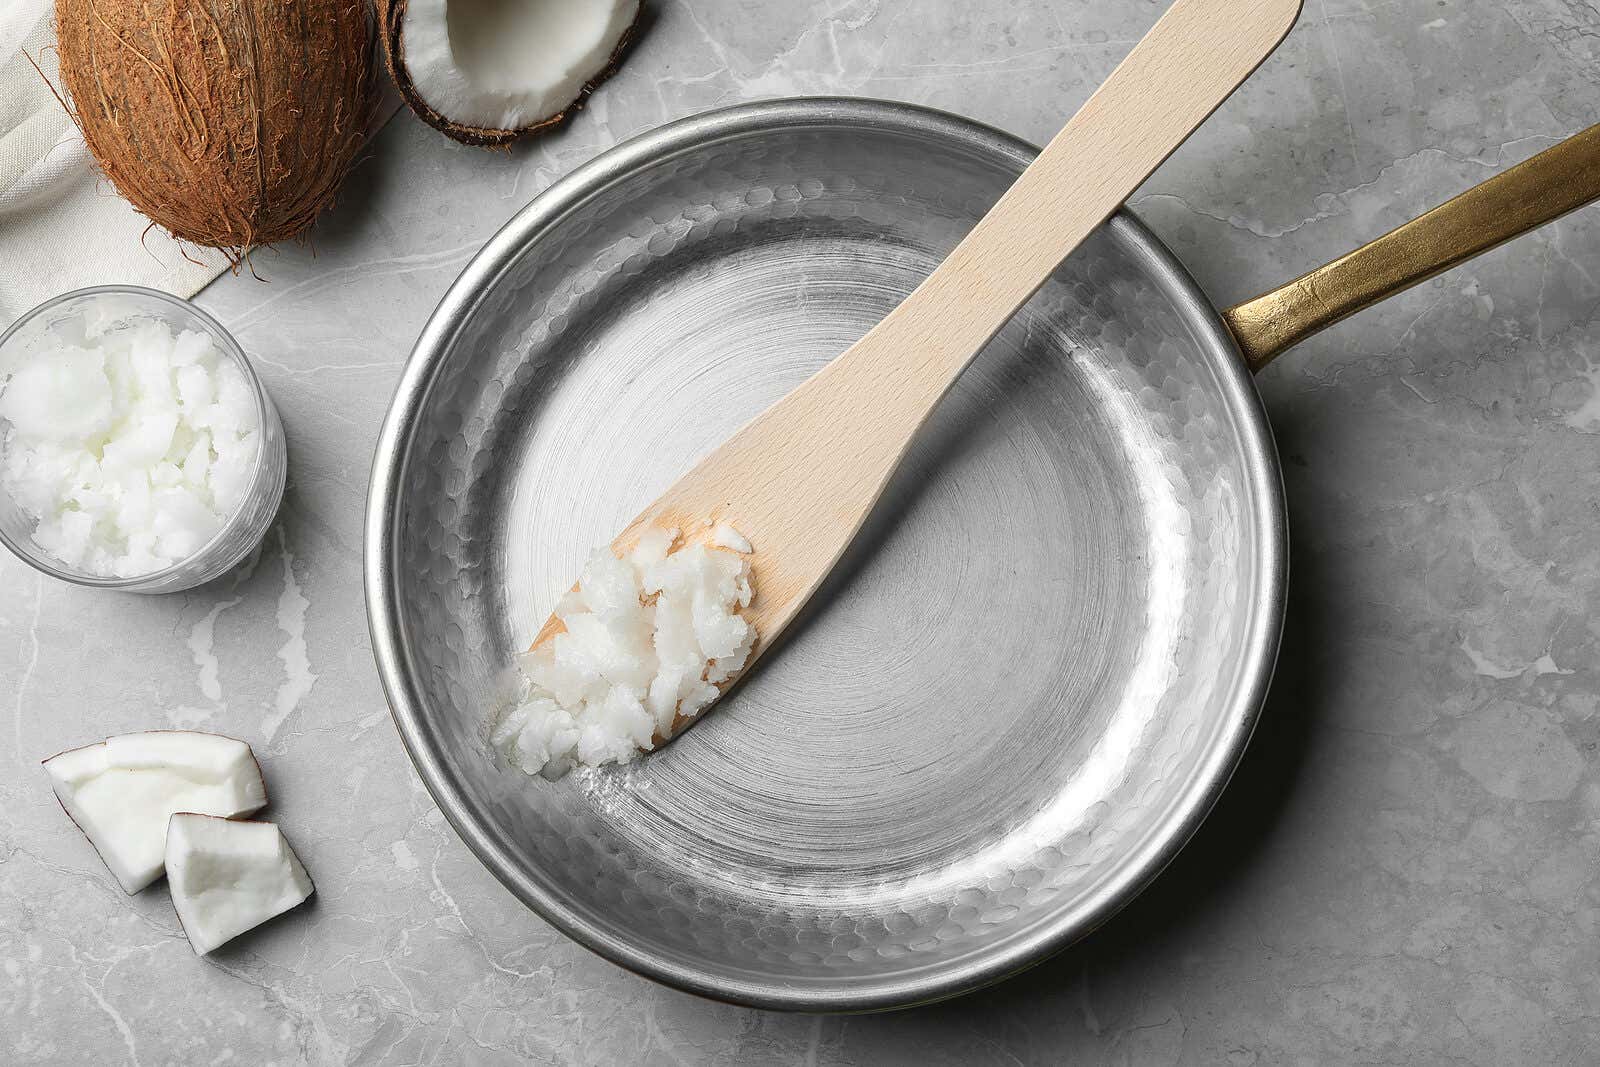 11 usos que le puedes dar al aceite de coco en tu cocina